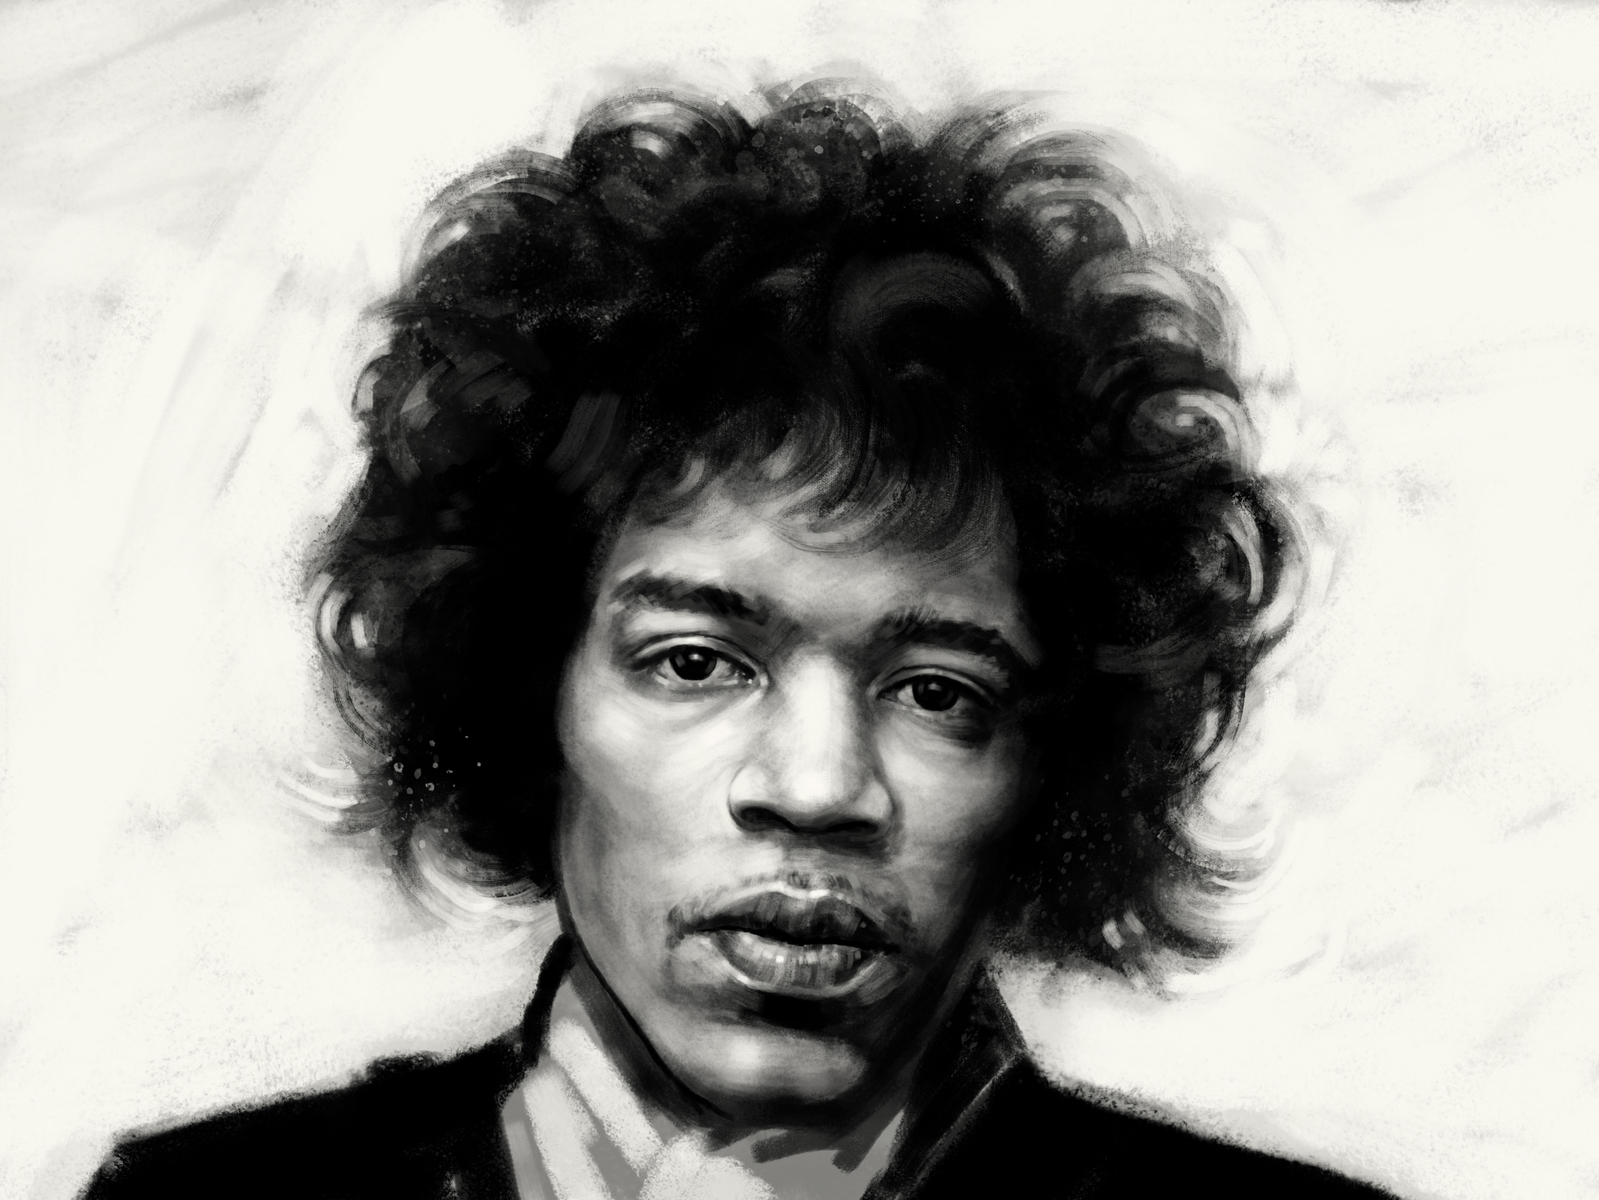 Jimi Hendrix portrait by Dannes Wegman on Dribbble